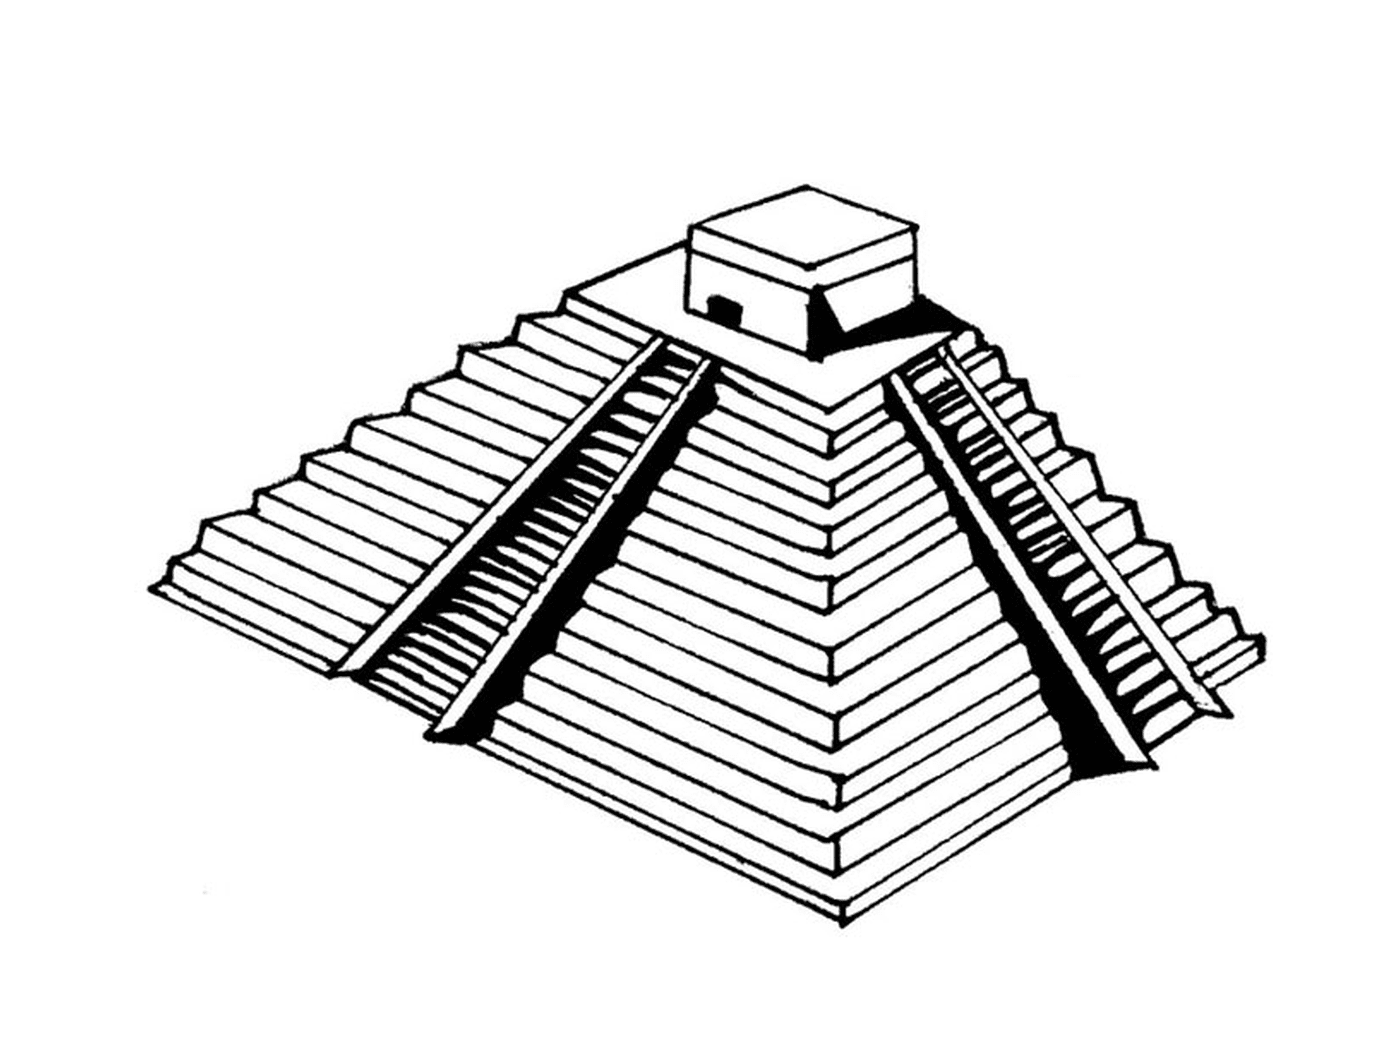  Pirâmide com uma plataforma 